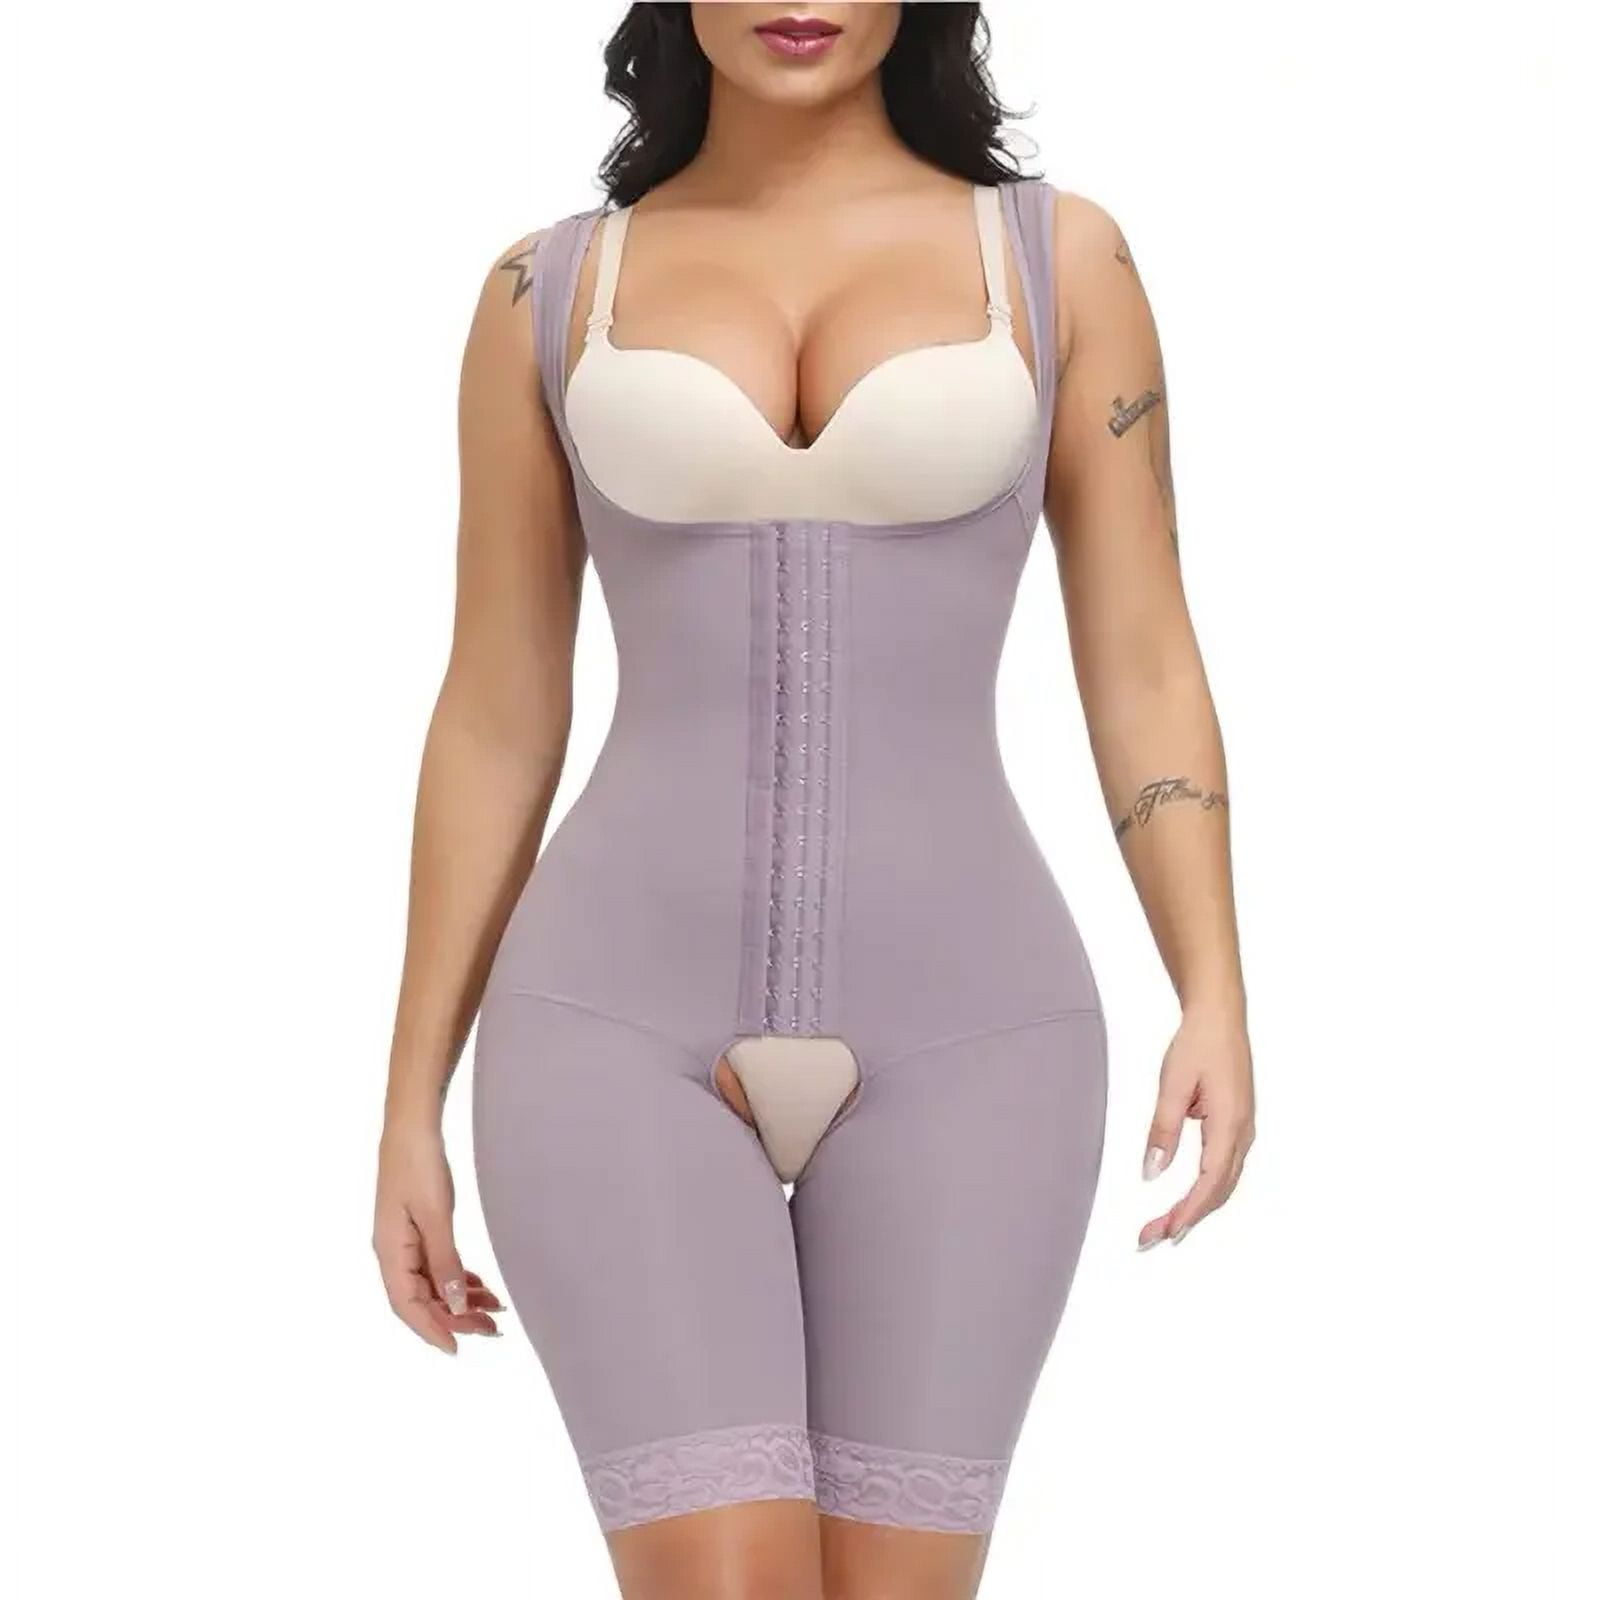 JOSHINE Shapewear for Women Seamless Fajas Body Shaper Open Bust Bodysuit  purple,XXXL